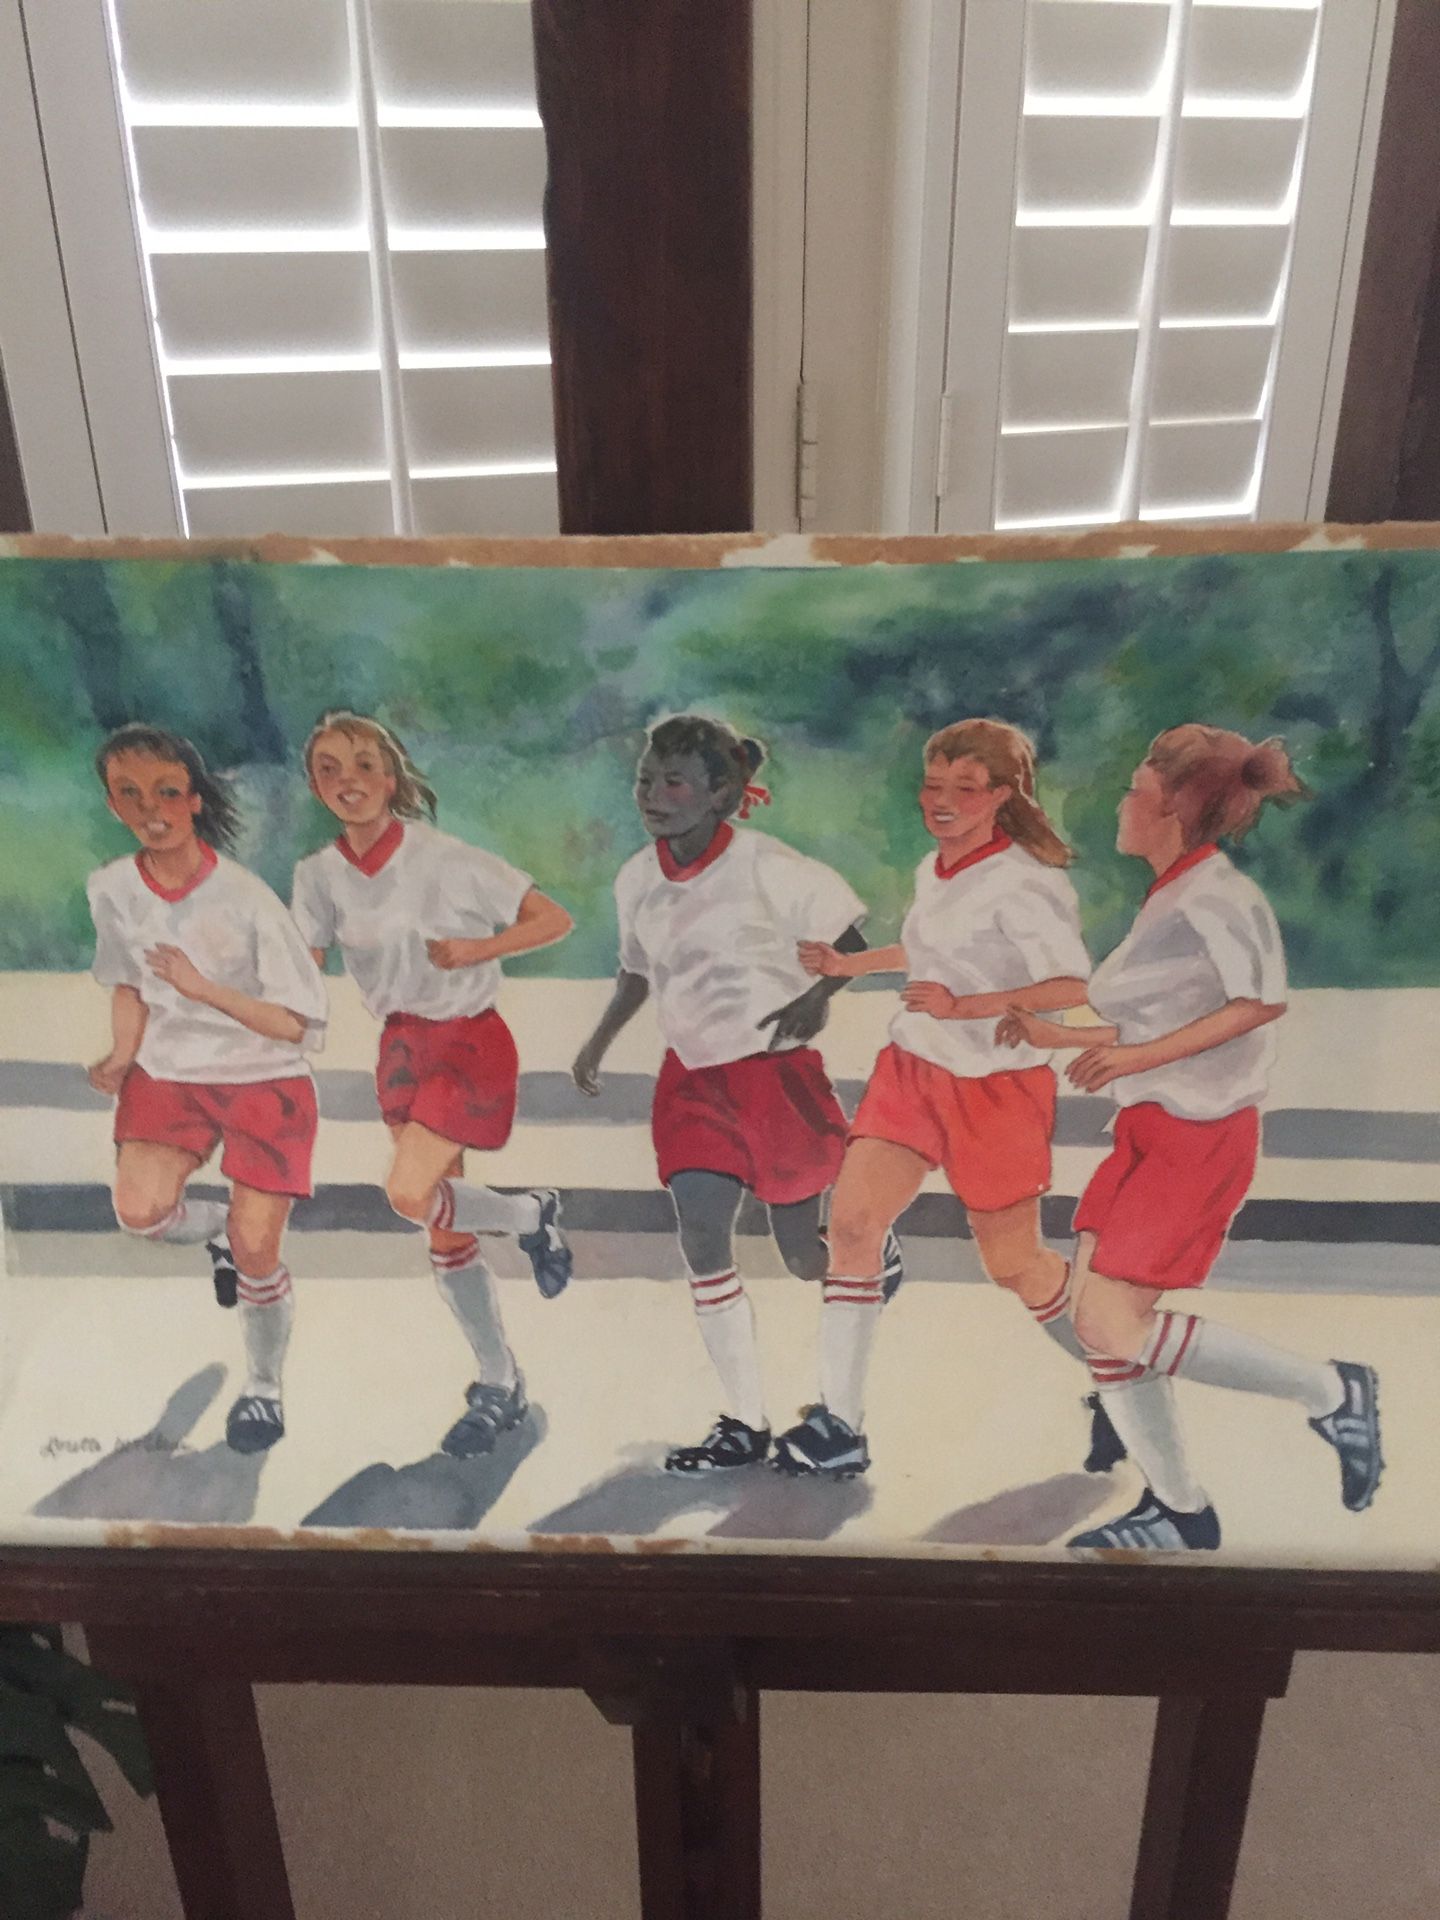 “Soccer Team” original watercolor painting